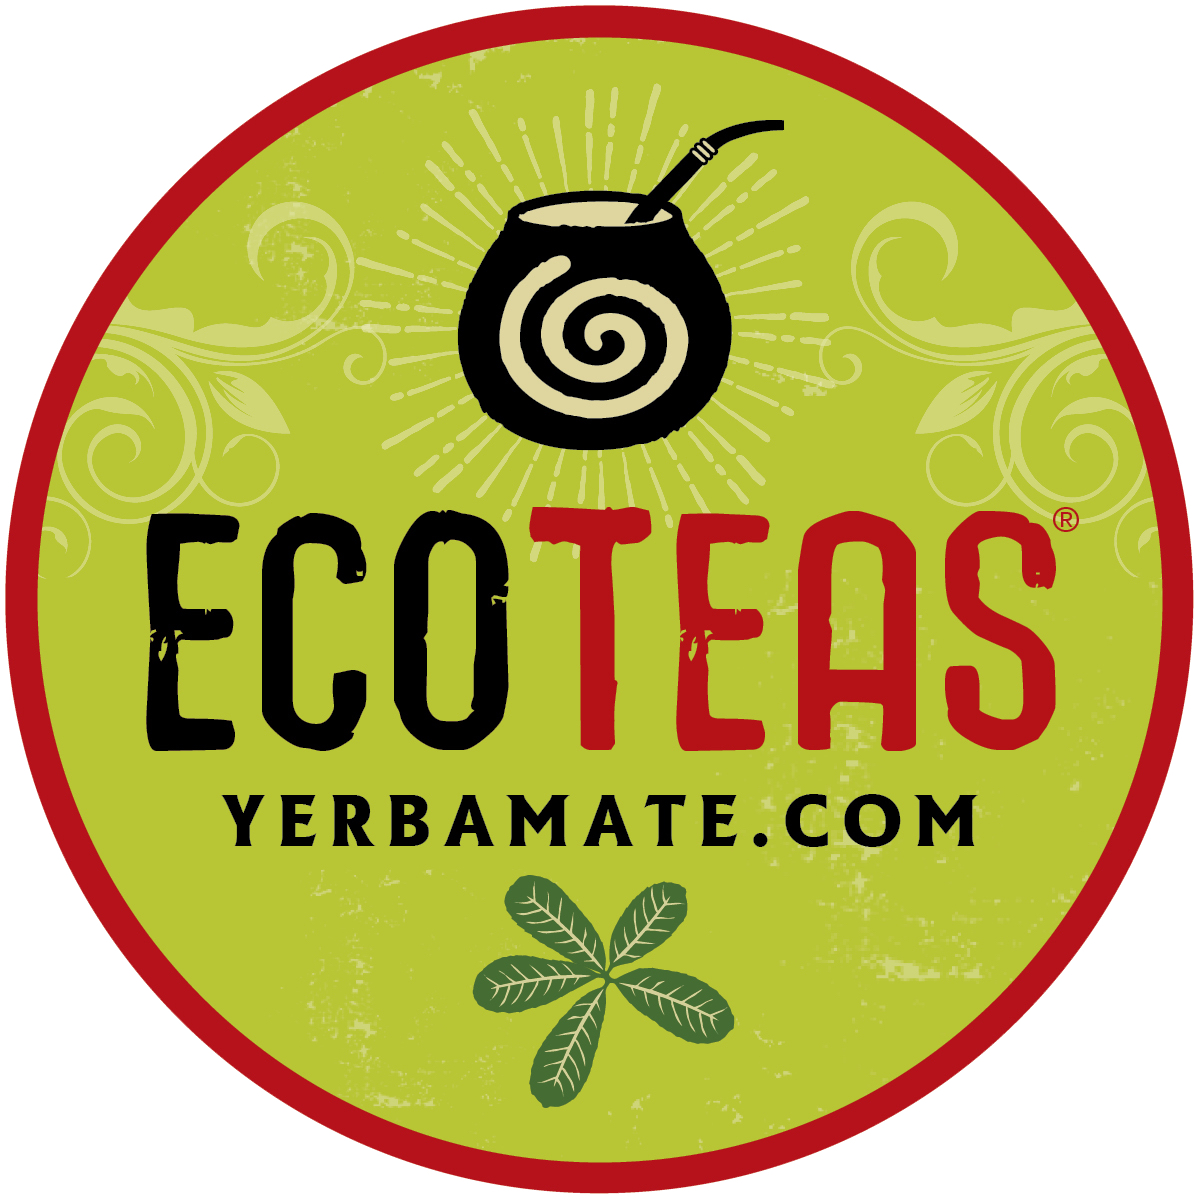 YerbaMate Ecoteas logo